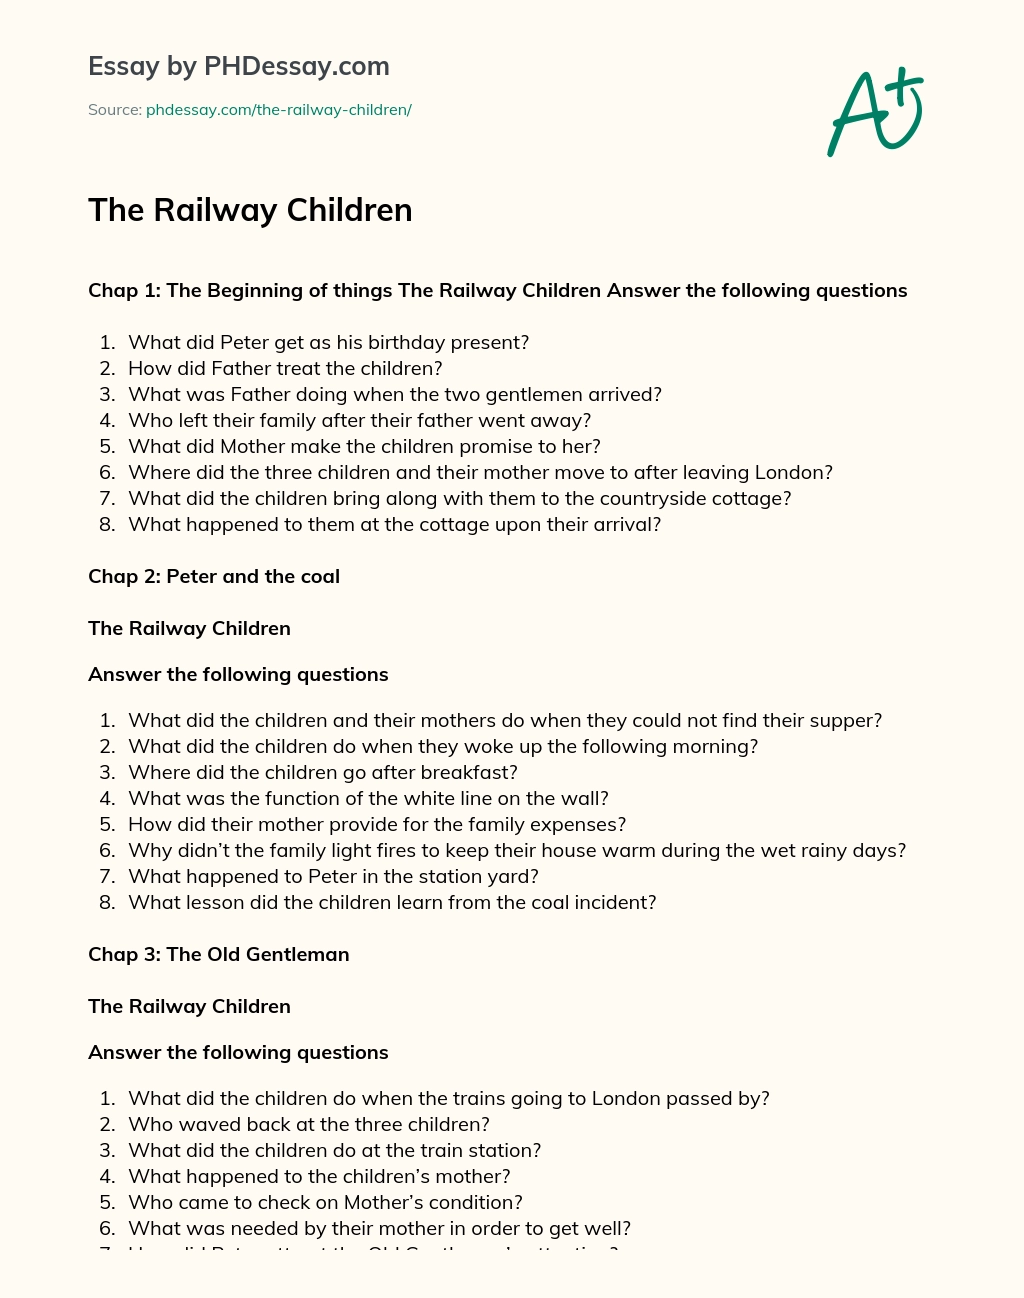 The Railway Children essay